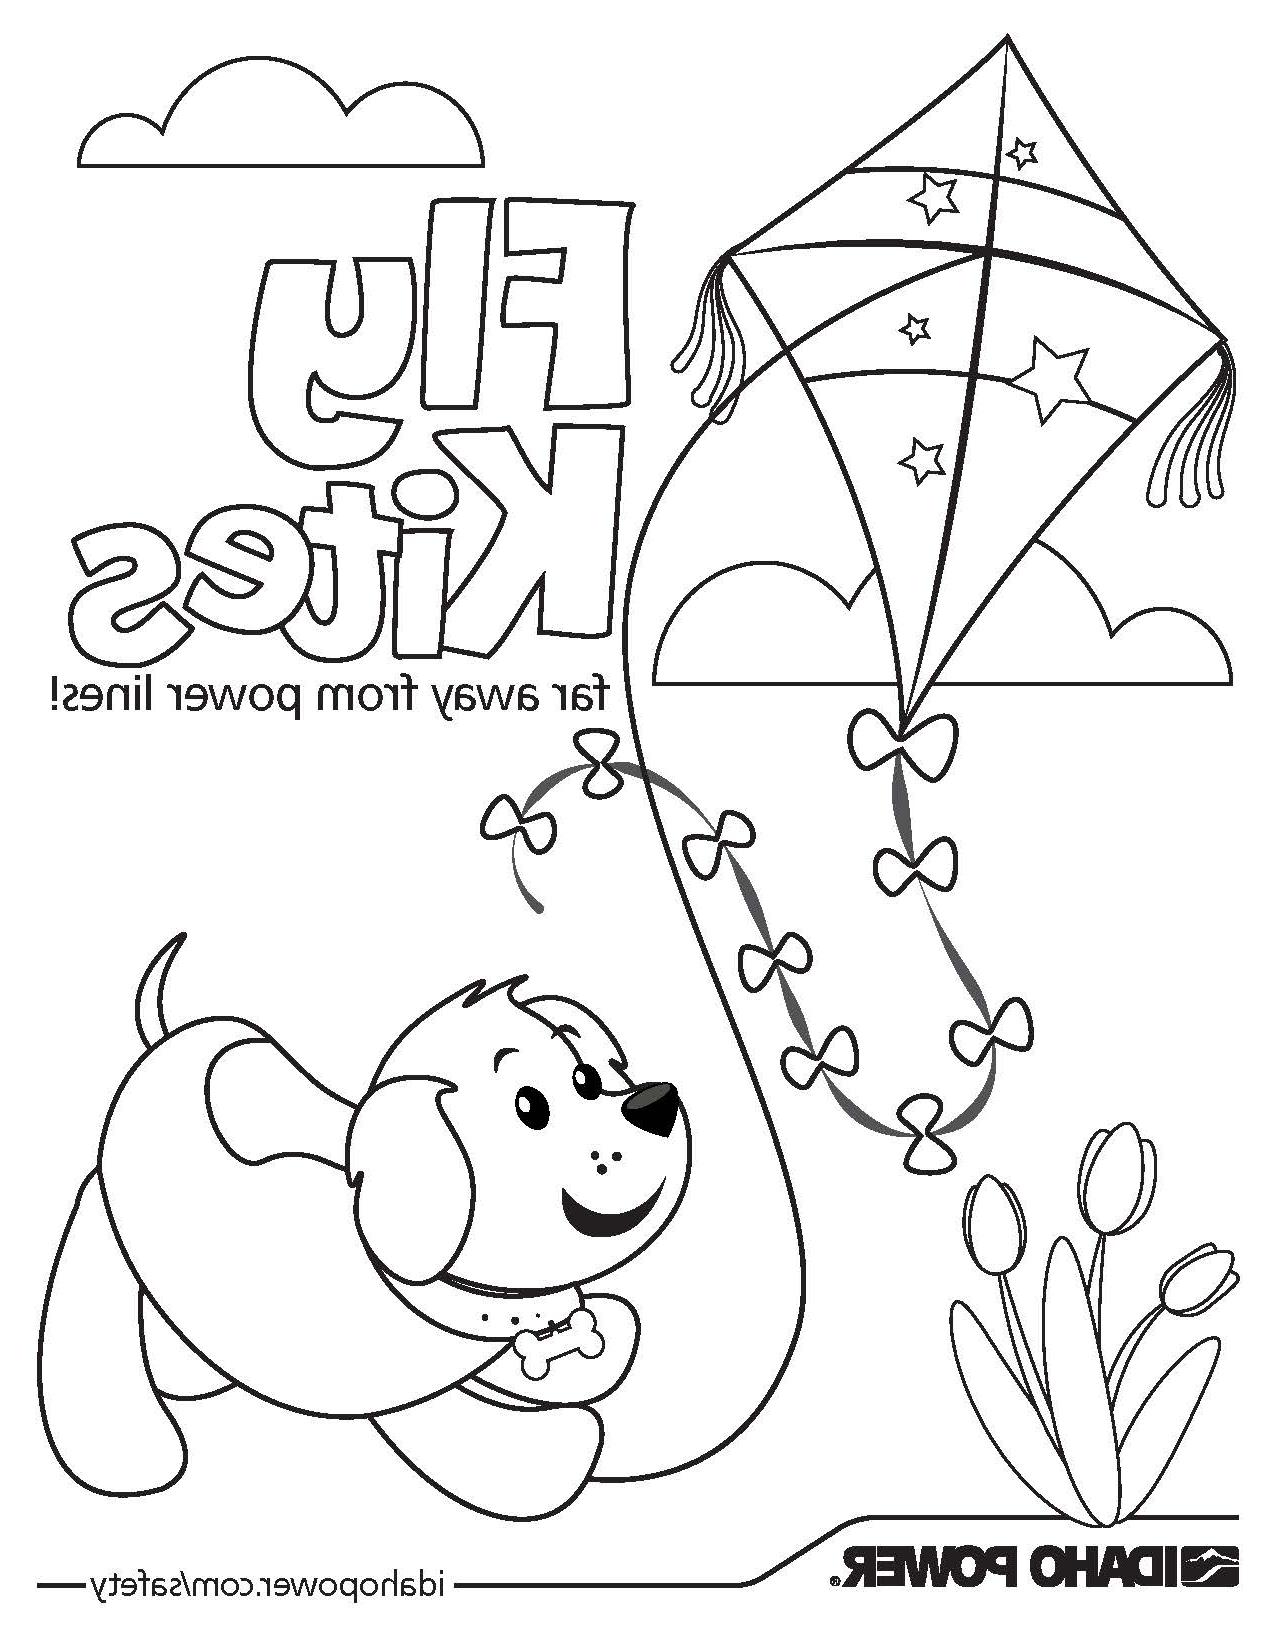 狗和风筝的图片，上面写着“放风筝远离电线”